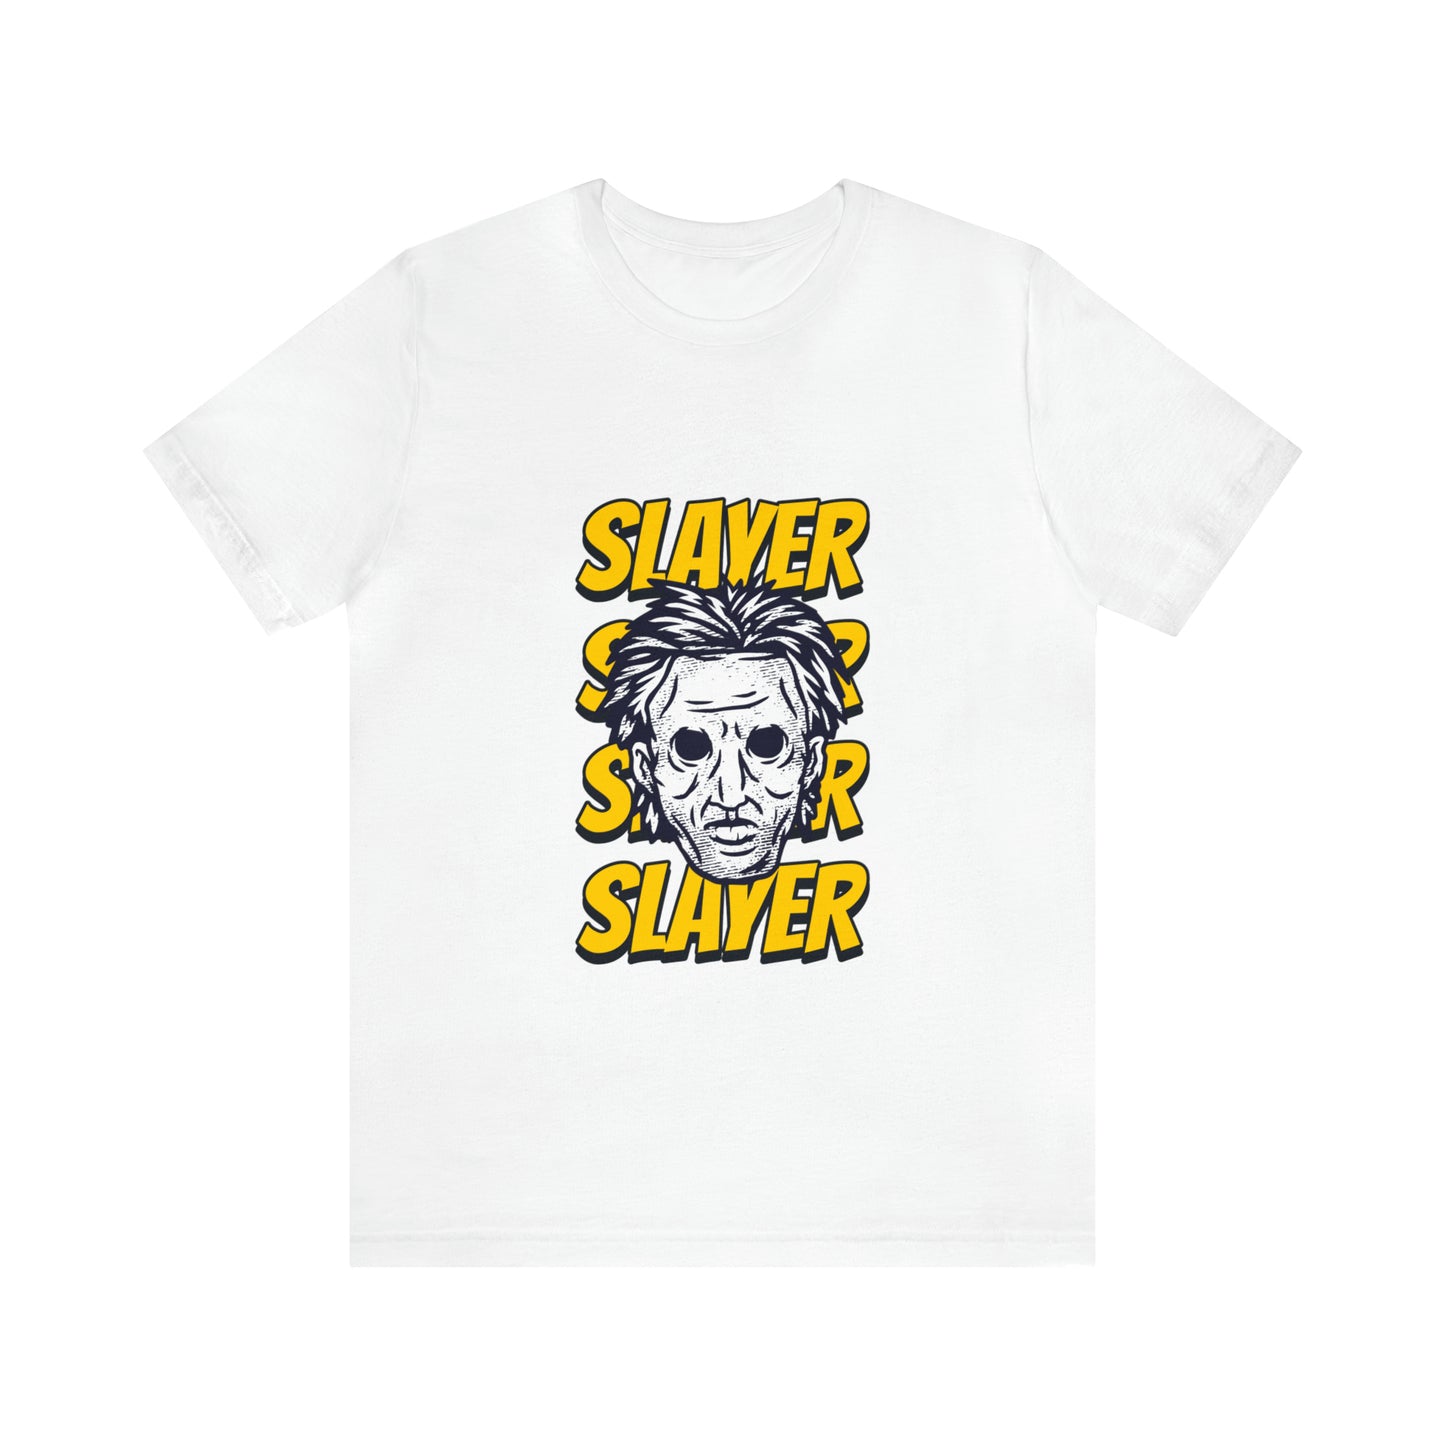 Slayer - Unisex T-Shirt